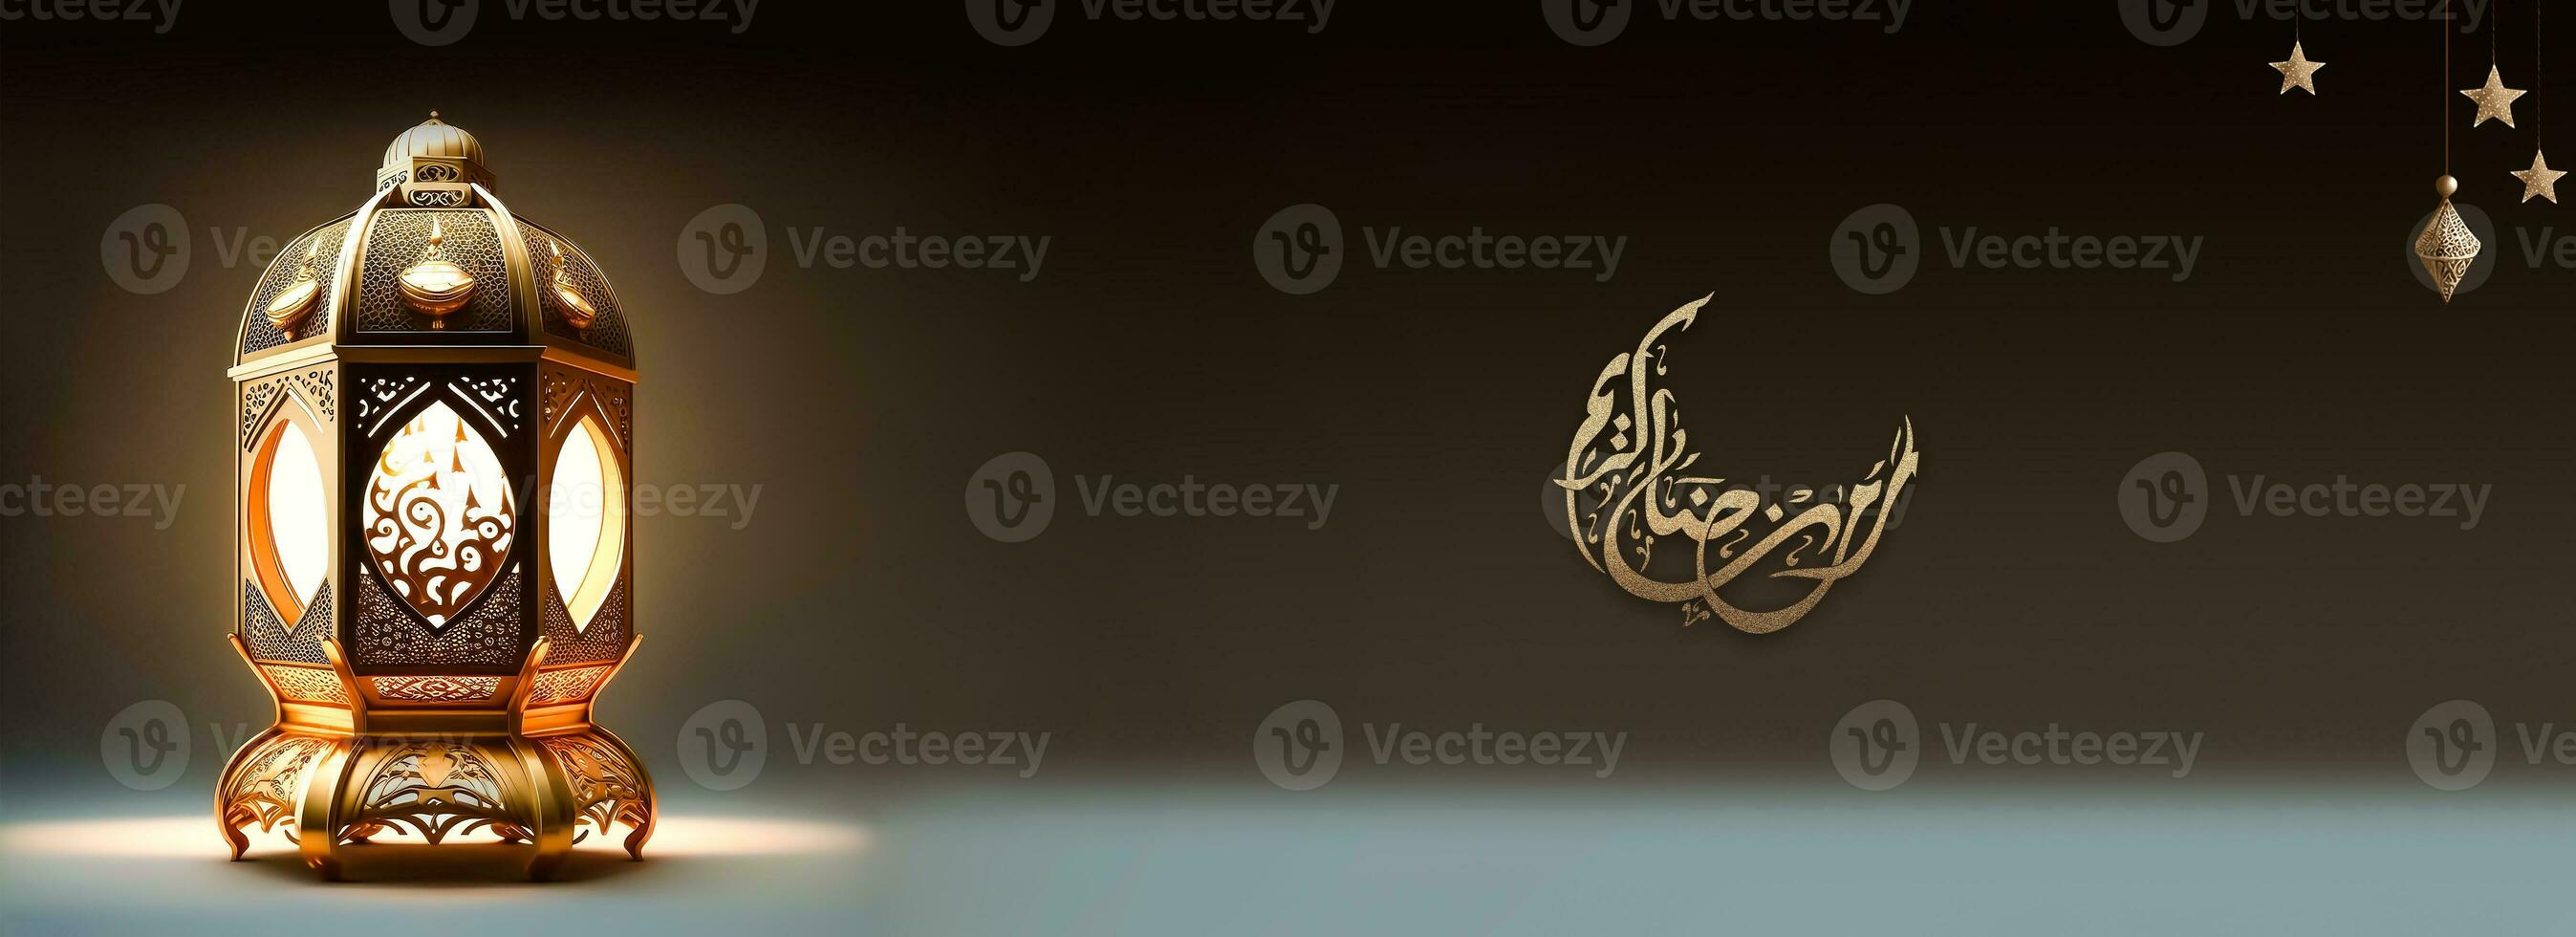 golden Arabisch Kalligraphie von Ramadan kareem im Halbmond Mond gestalten und beleuchtet realistisch Lampe auf braun und Blau Hintergrund. Banner oder Header Design. 3d machen. foto